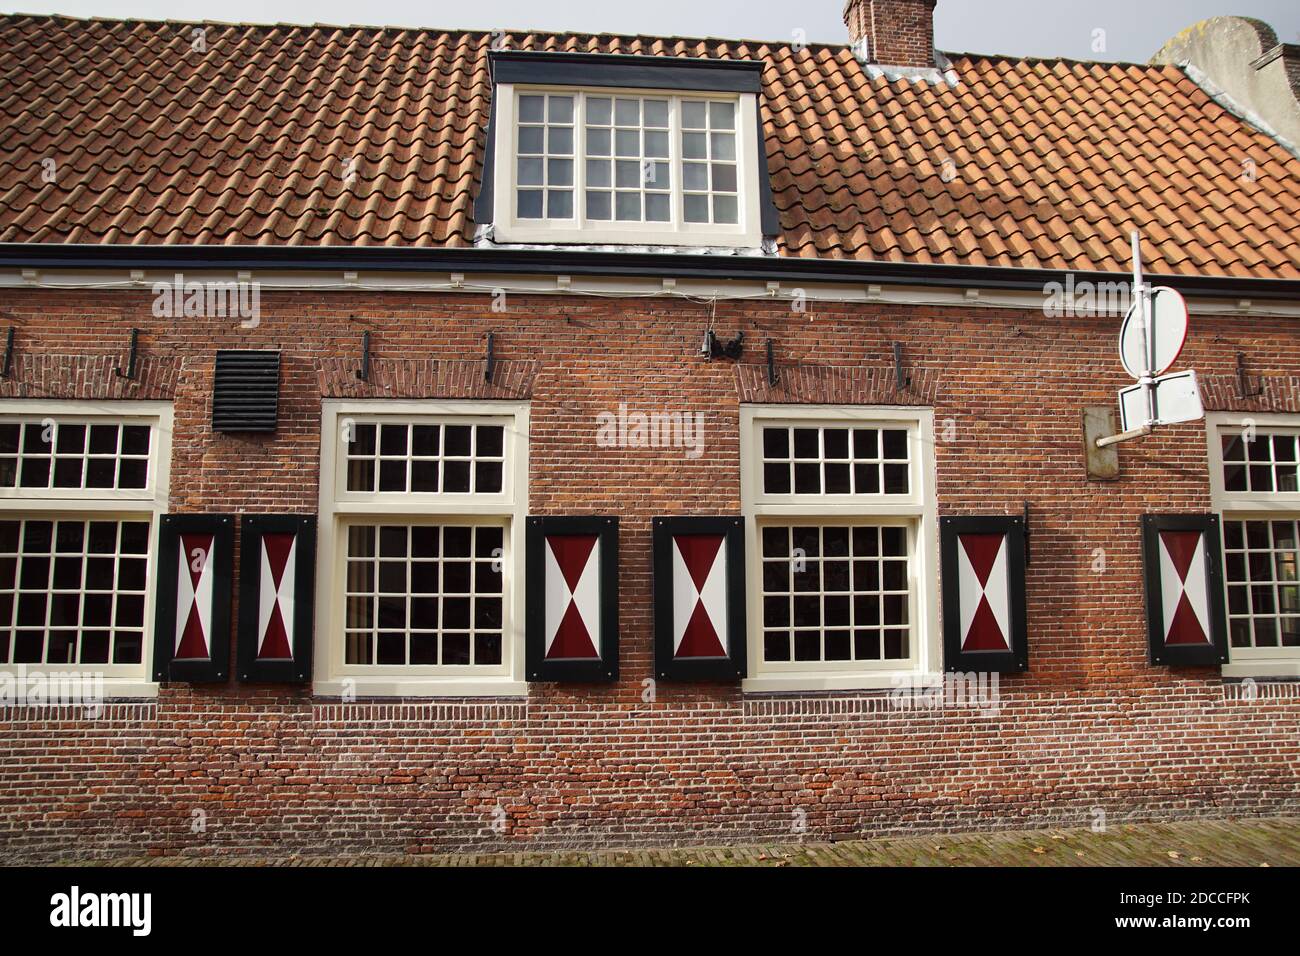 Vecchia casa, muratura e finestre a cassettoni di un edificio olandese del 1787. Persiane in legno rosso e bianco. Paesi Bassi, novembre Foto Stock